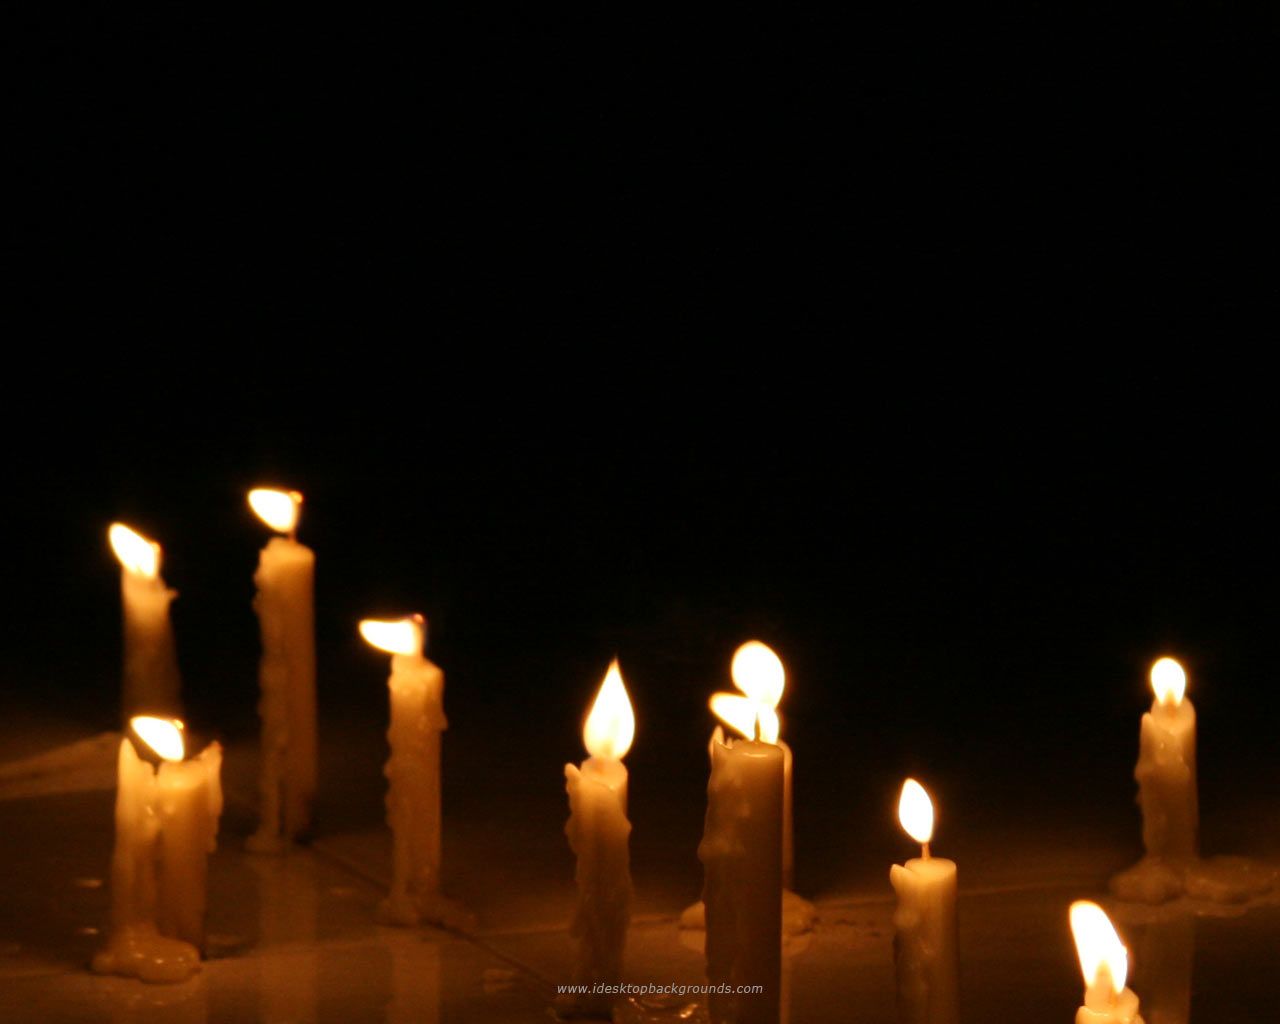 دانلود رایگان عکس شمع های روشن در حال سوختن مناسب تسلیت گویی 